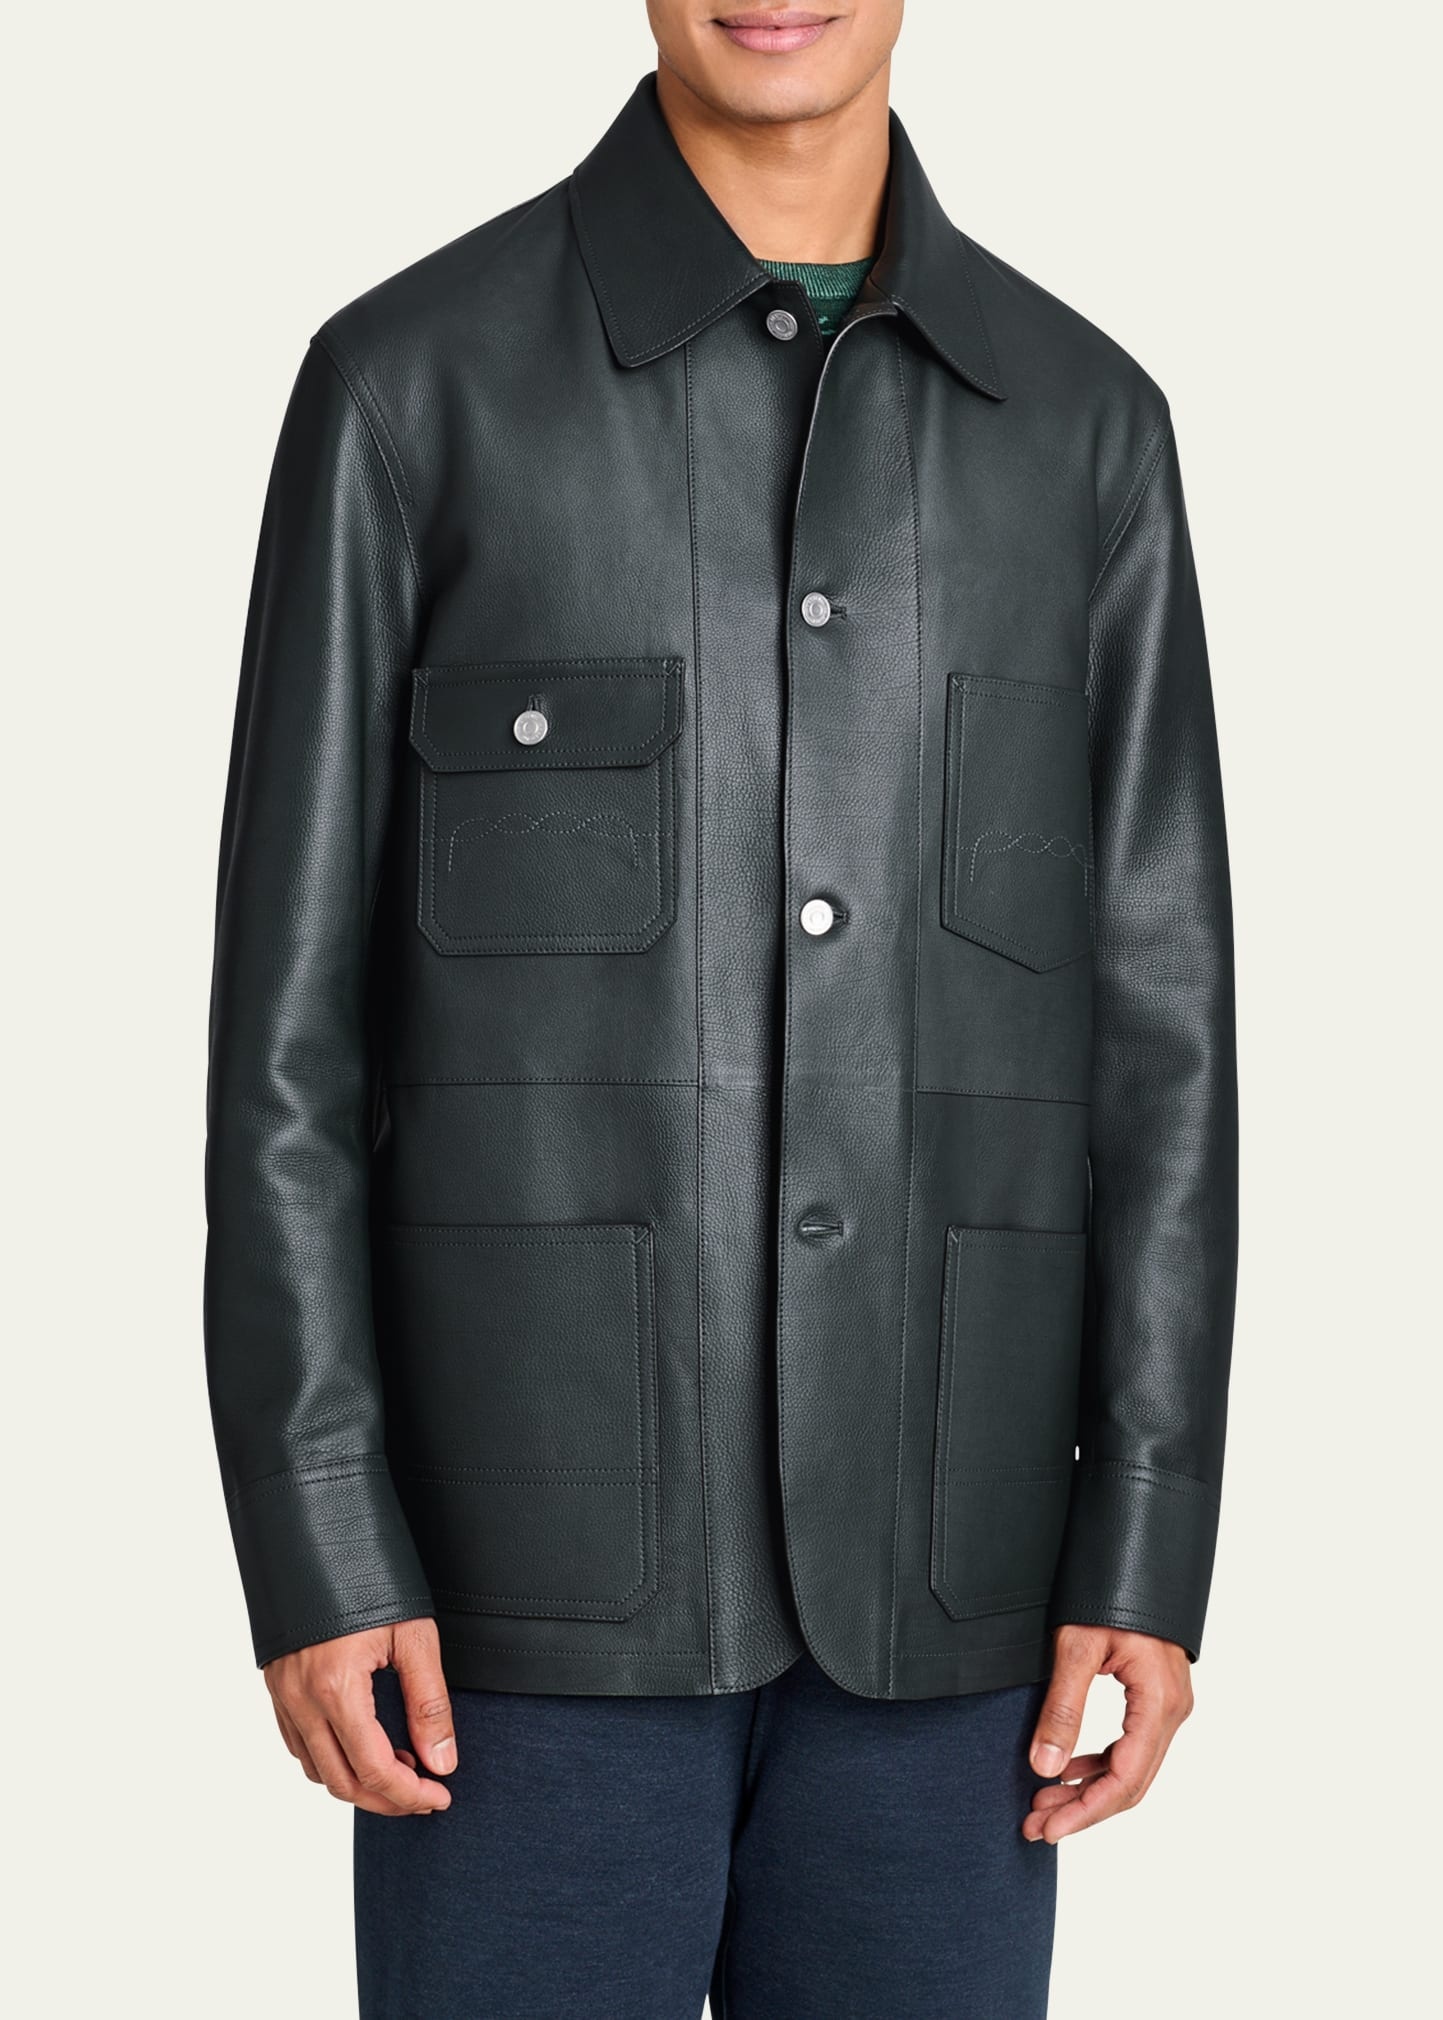 Men's Leather 4-Pocket Chore Jacket - 4